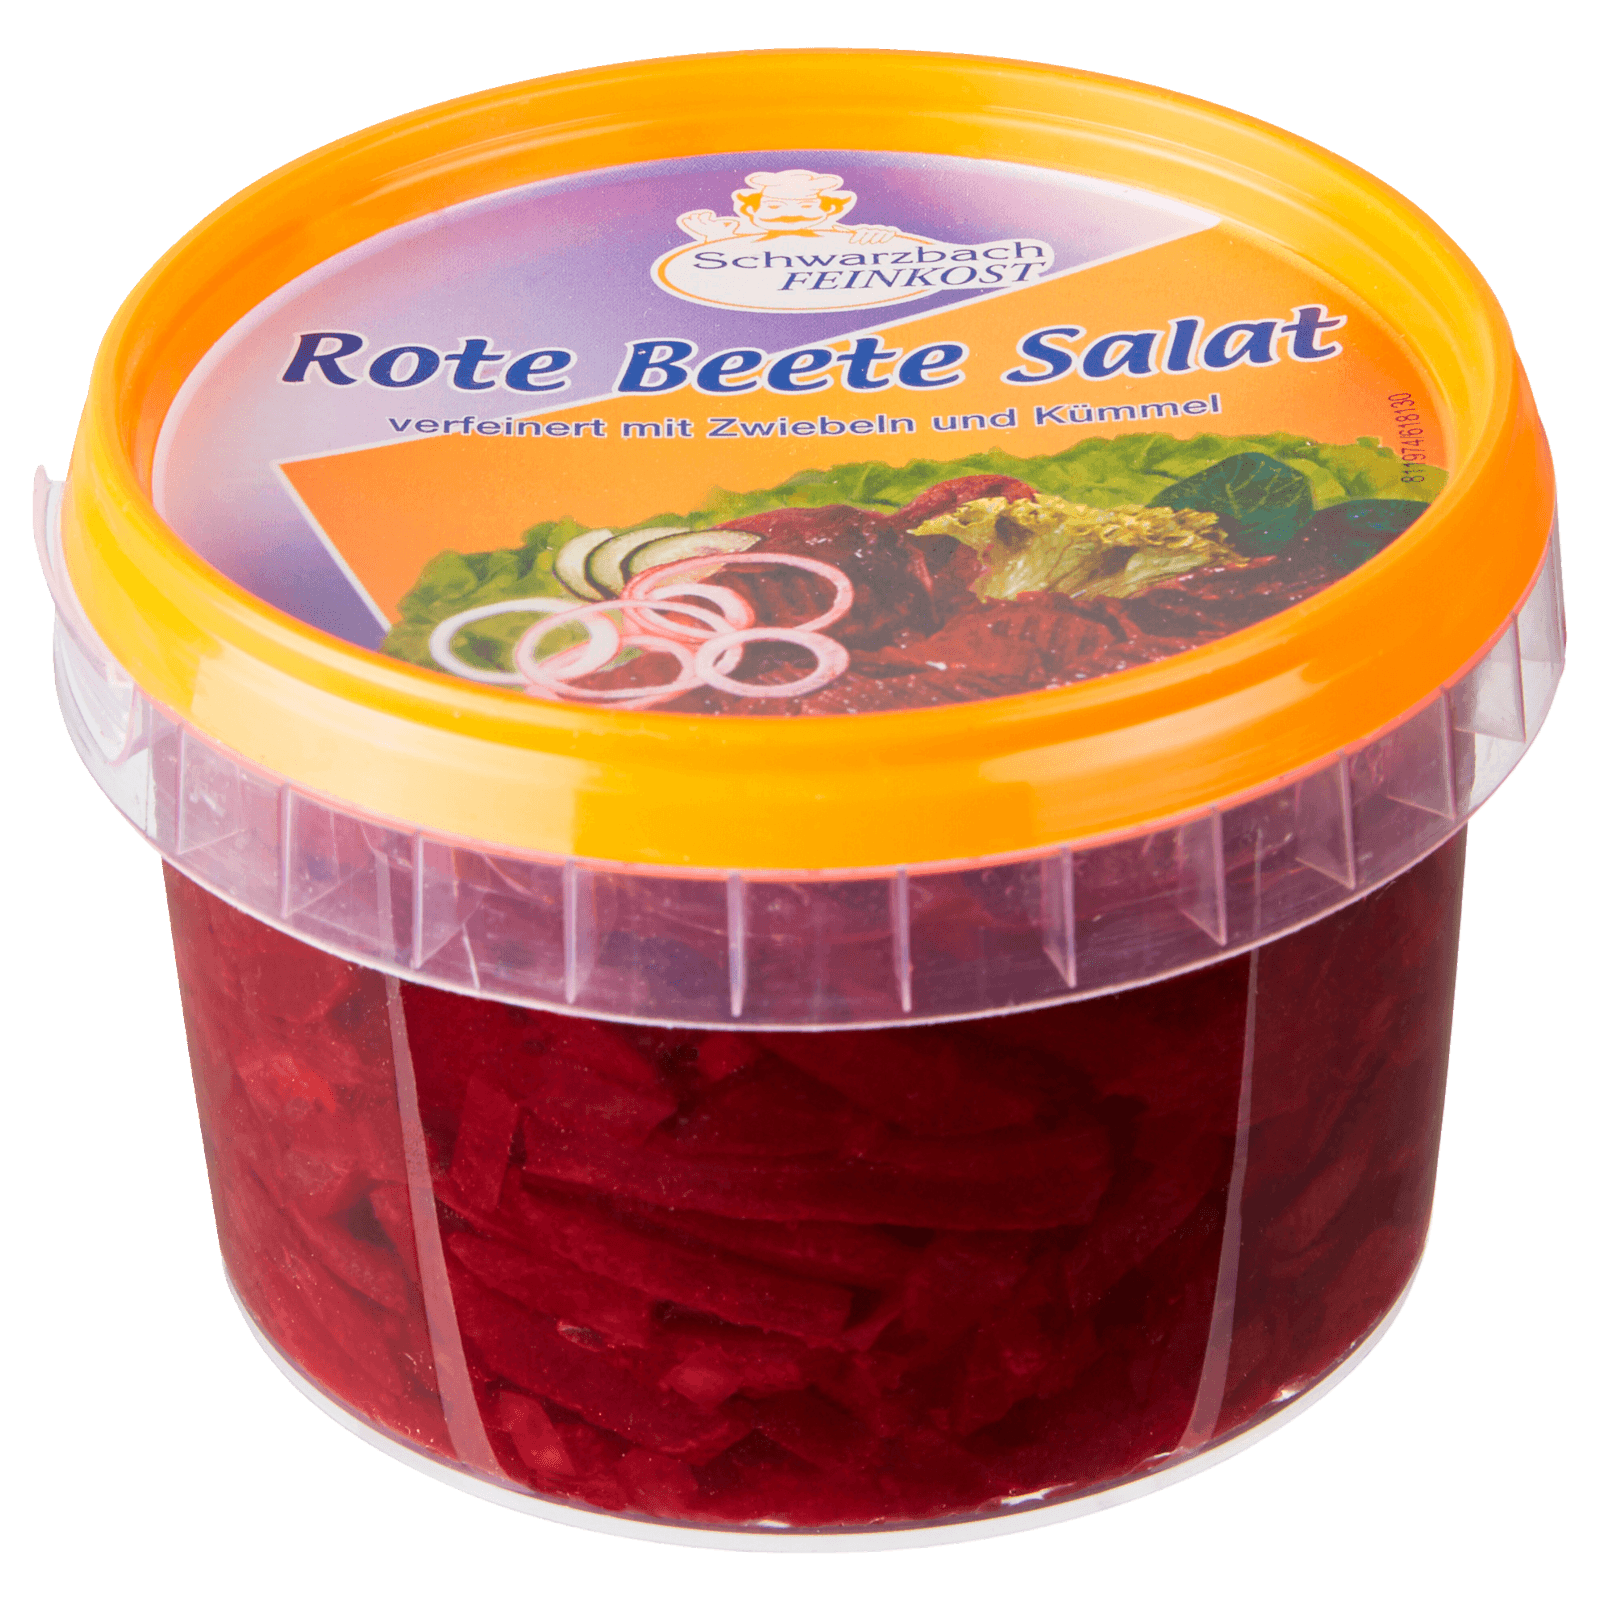 Schwarzbach Rote Beete Salat 250g  für 1.29 EUR